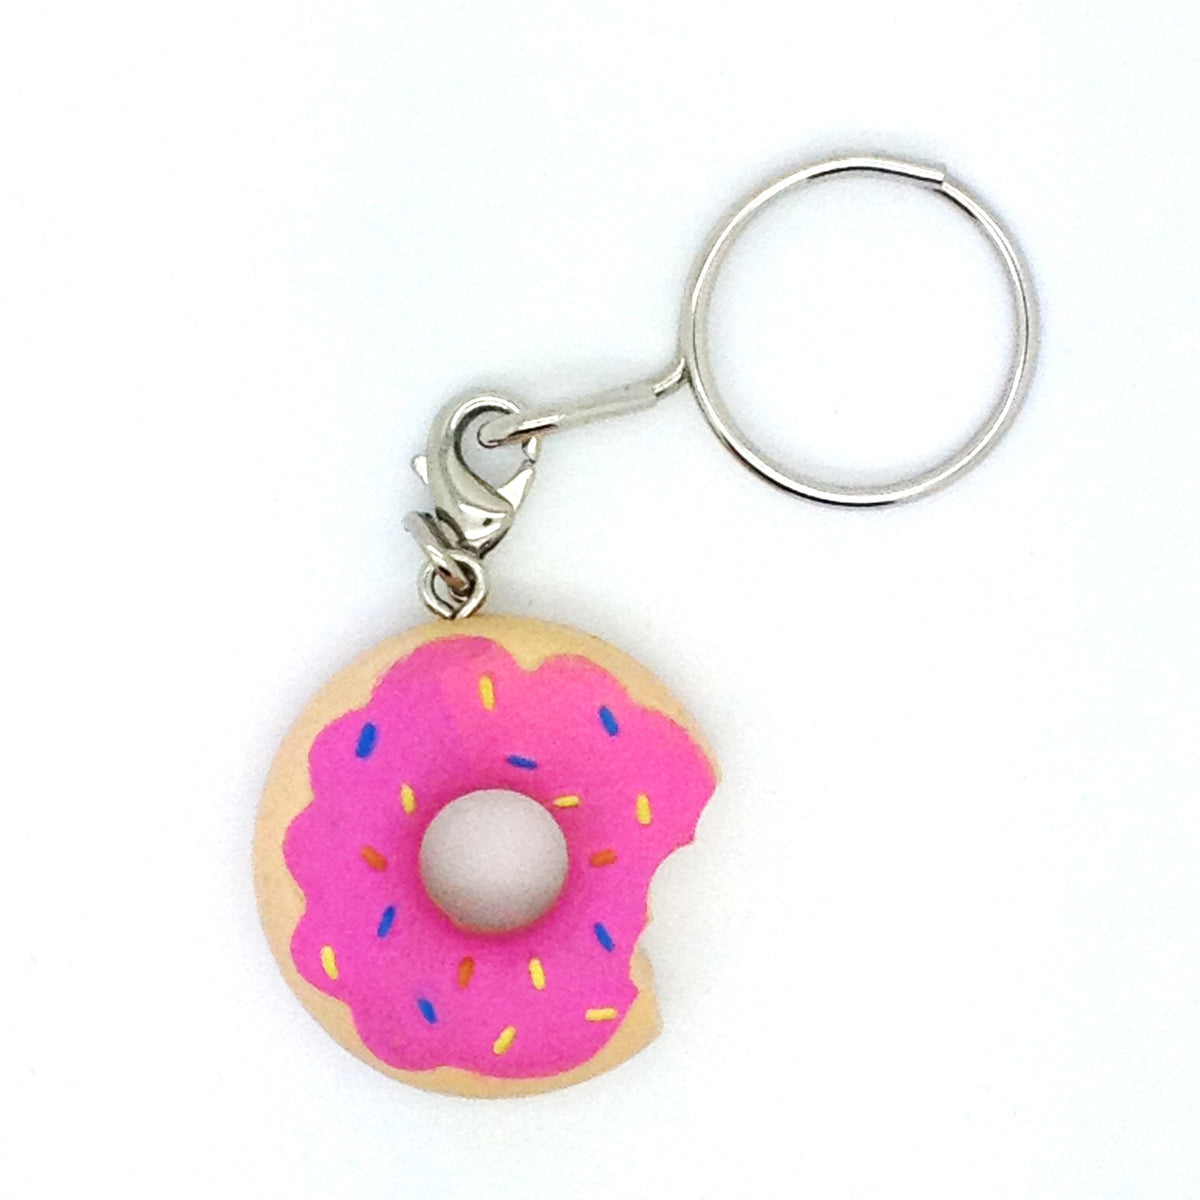 The Simpsons Keychain: Sprinkle Donut - Mindzai
